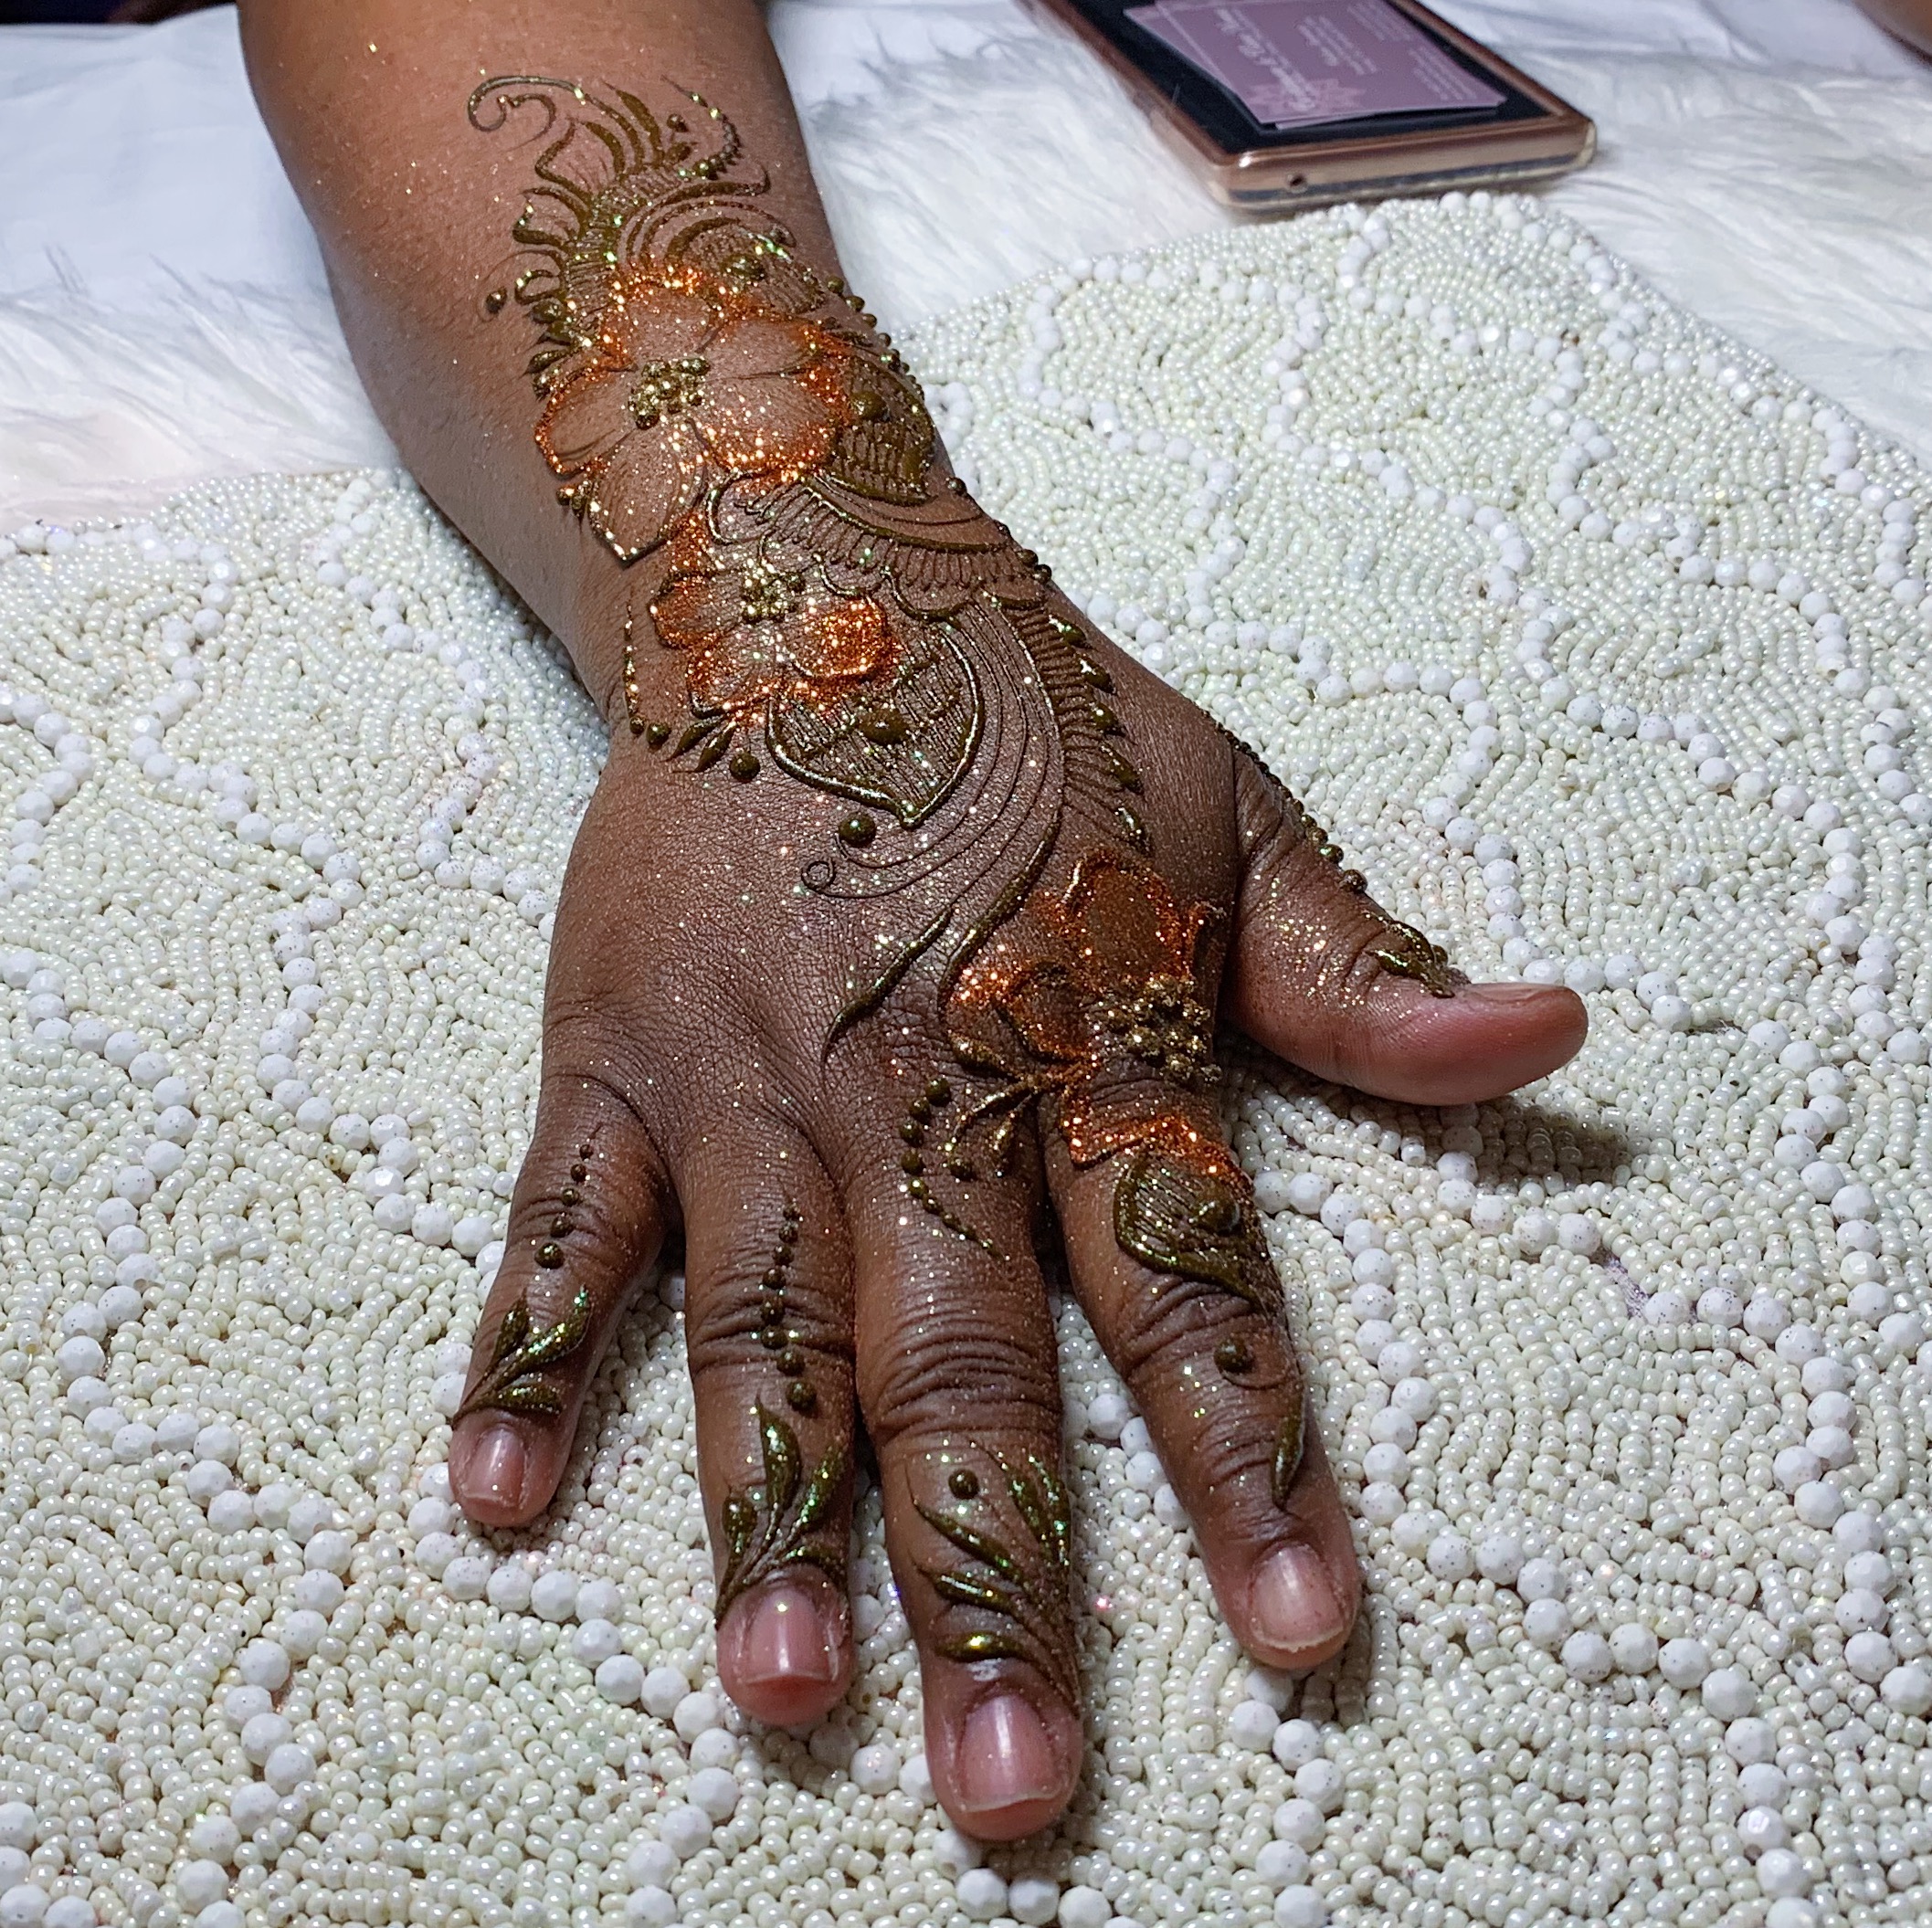 Baltimore Henna Artist